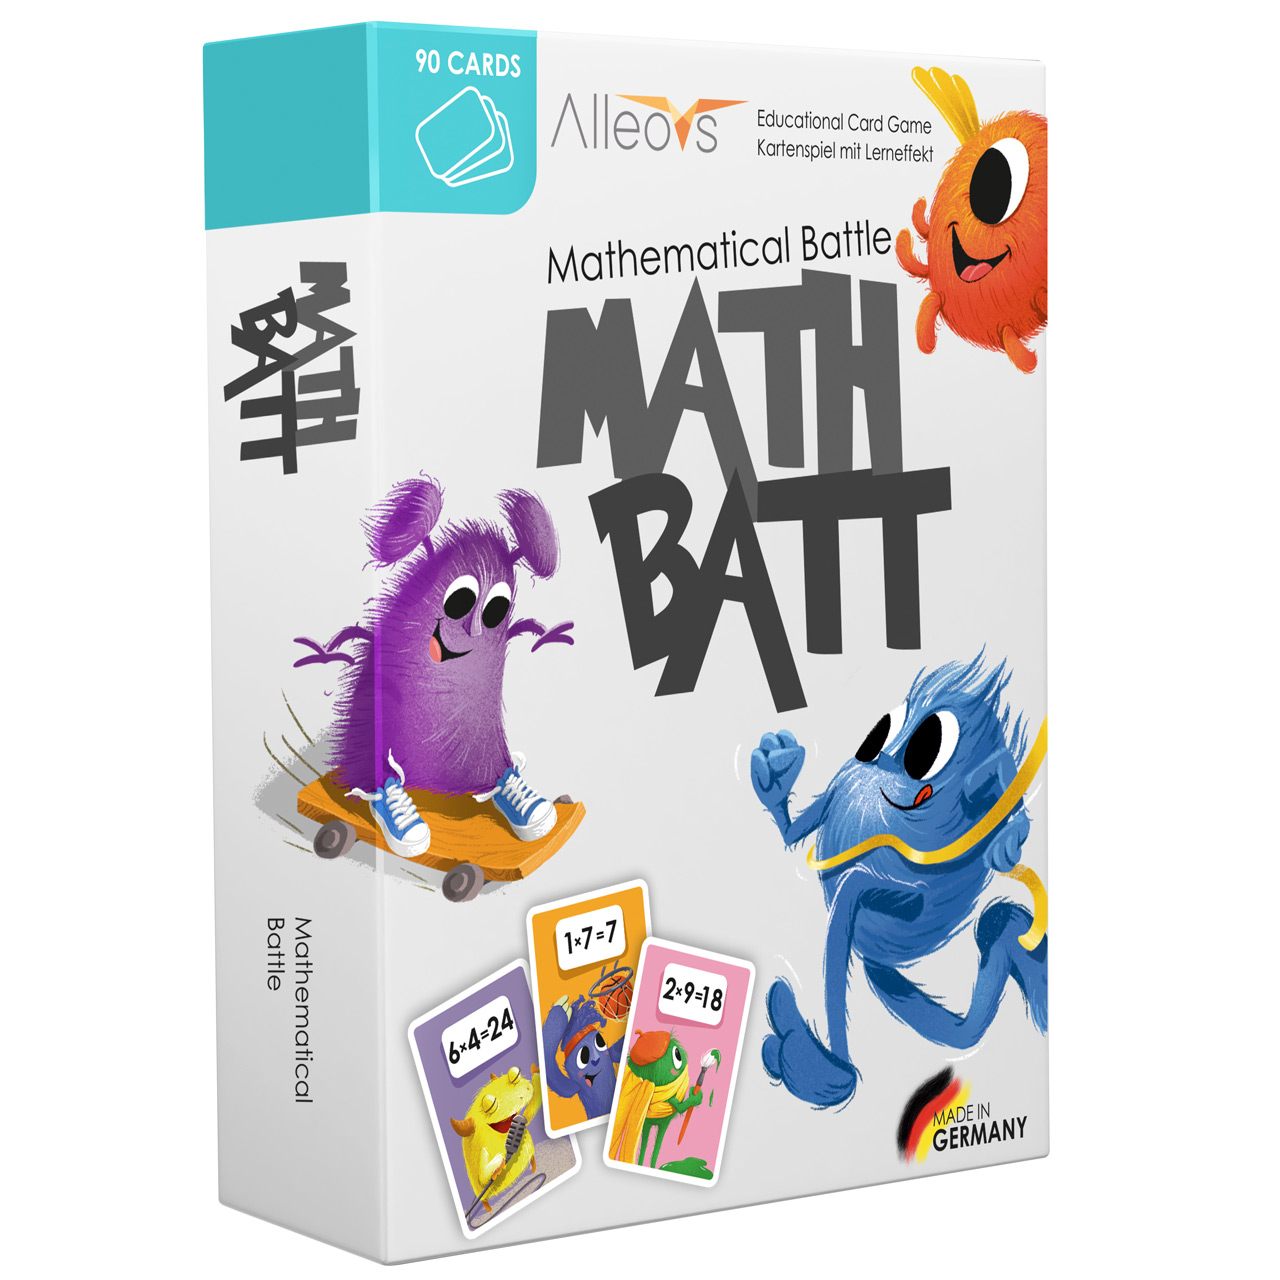 ALLEOVS-Math-Batt-Einmalseins-Spiel-lernspiel-Mathe-7061285959301-lafueliki